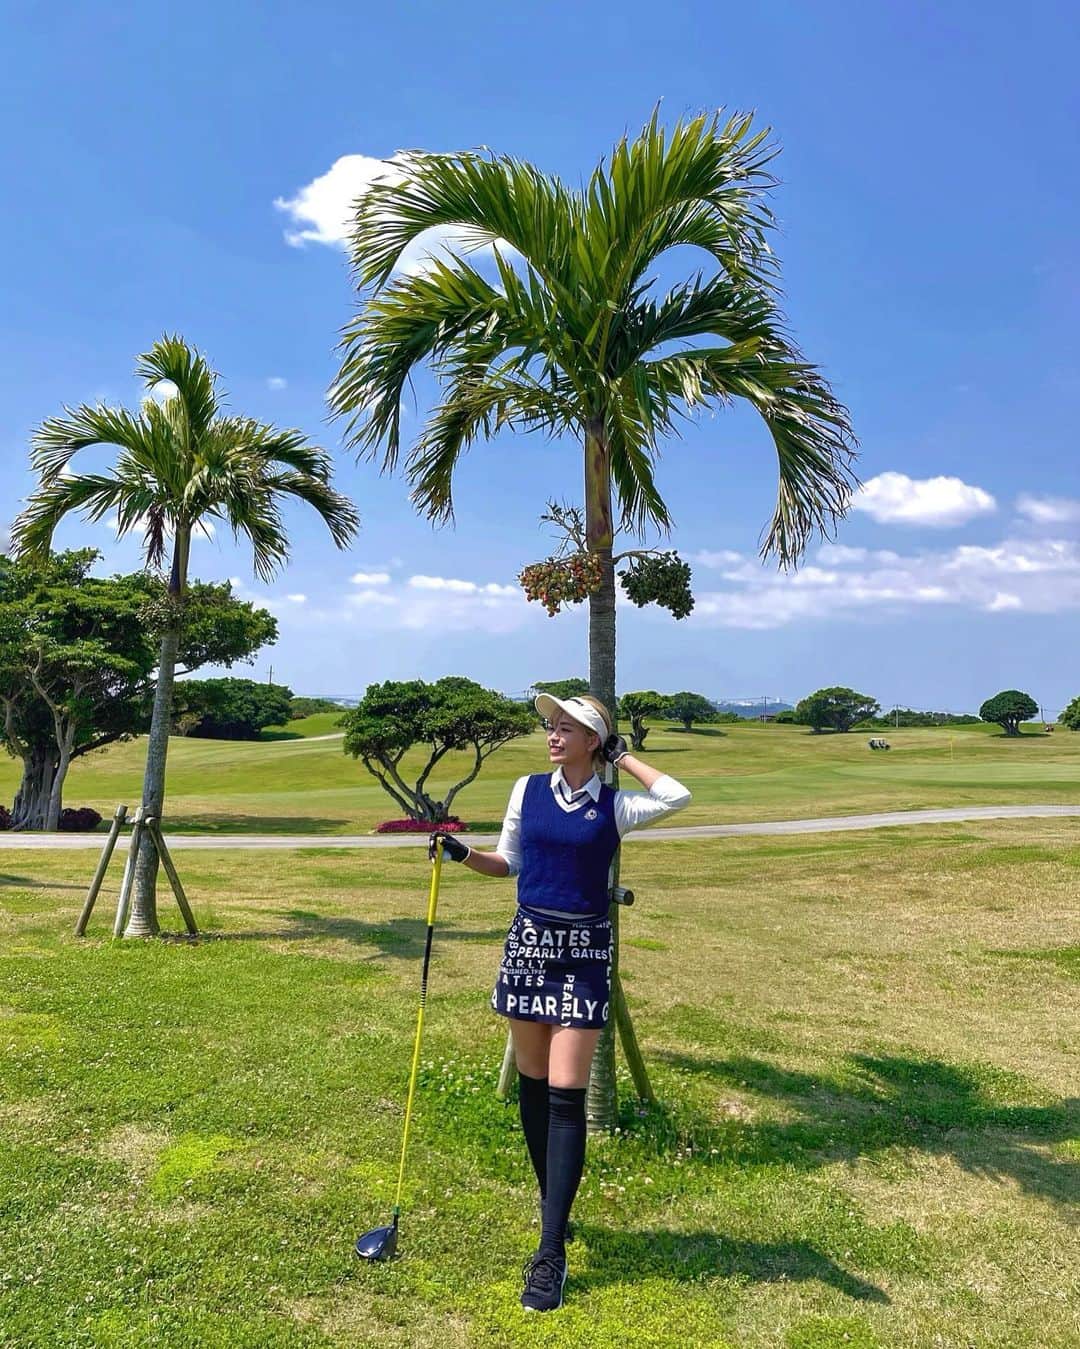 NAHOのインスタグラム：「#GOLF女子 #ゴルフ女子 ⛳️ . . 大好き沖縄ゴルフ🌺 海眺めながらのgolfはもー最高だったあ🏝✨ 痛めてた腰も完全に復活しました✌️‼️ これでやっとゴルフ楽しめる🥺♡ ゴルフ女子、男子の皆様たくさん誘ってー❣️ 一緒に楽しもーーうっ💋🏌️‍♀️❣️ . . 小さい頃からずっとスポーツしかして来なくて、周りは青春真っ盛りの中なほもほんとは理想だった女の子らしい事とか全然してこれなかったけど👀 今思うとその時は辛かったけどこおやって今に繋がってるなって♡ 歳を重ねても健康で全力でスポーツを楽しめる身体でいれることにとっても感謝だなって🙏✨ この先いつくになっても健康的な自分でありたいと思うんだっ🌱💪🏾 . . . #NAHO #okinawa #GOLF #golfwear #golflife #golfgirl #nature #okinawagolf #pearlygates #golfcode #沖縄 #ゴルフ #ゴルフウェア #ゴルフ好き #ゴルフ場 #ごるふ女子 #沖縄ゴルフ #ゴルフ好きな人と繋がりたい」